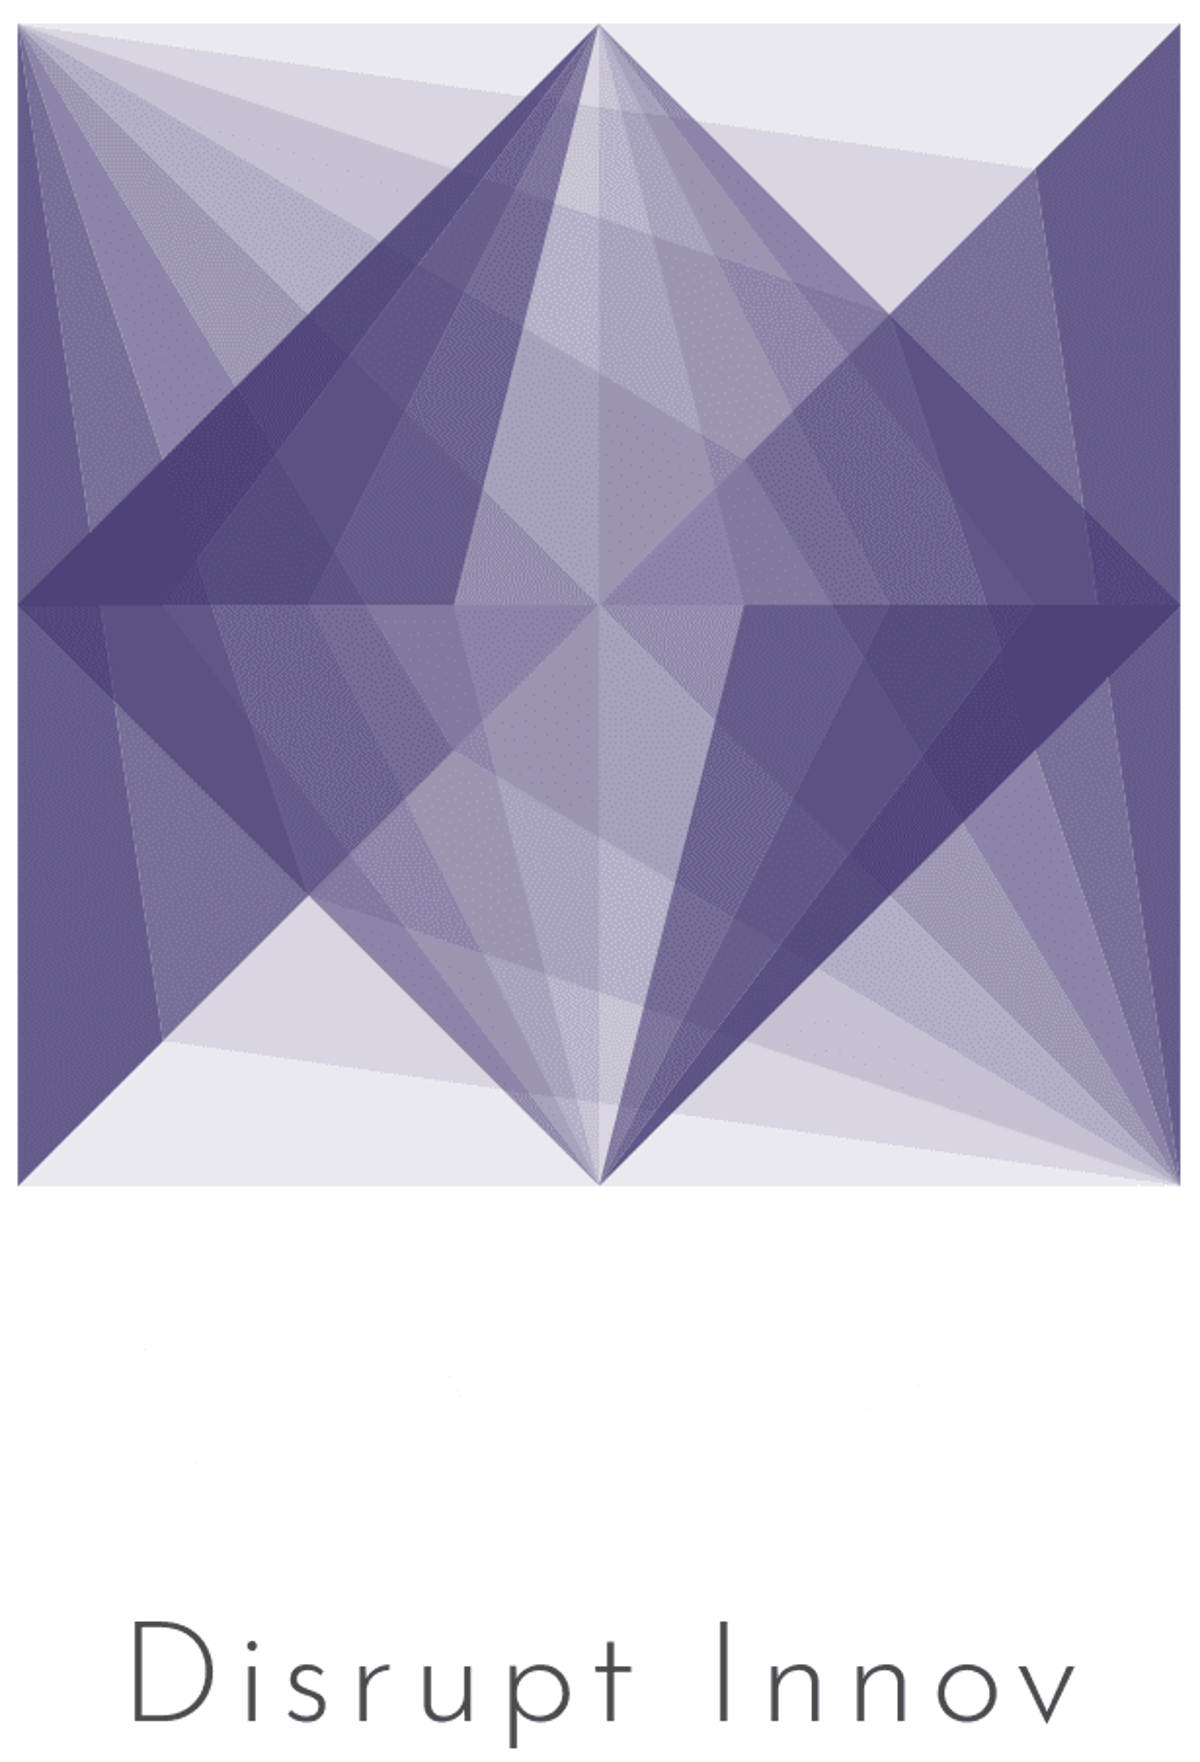 MON PC